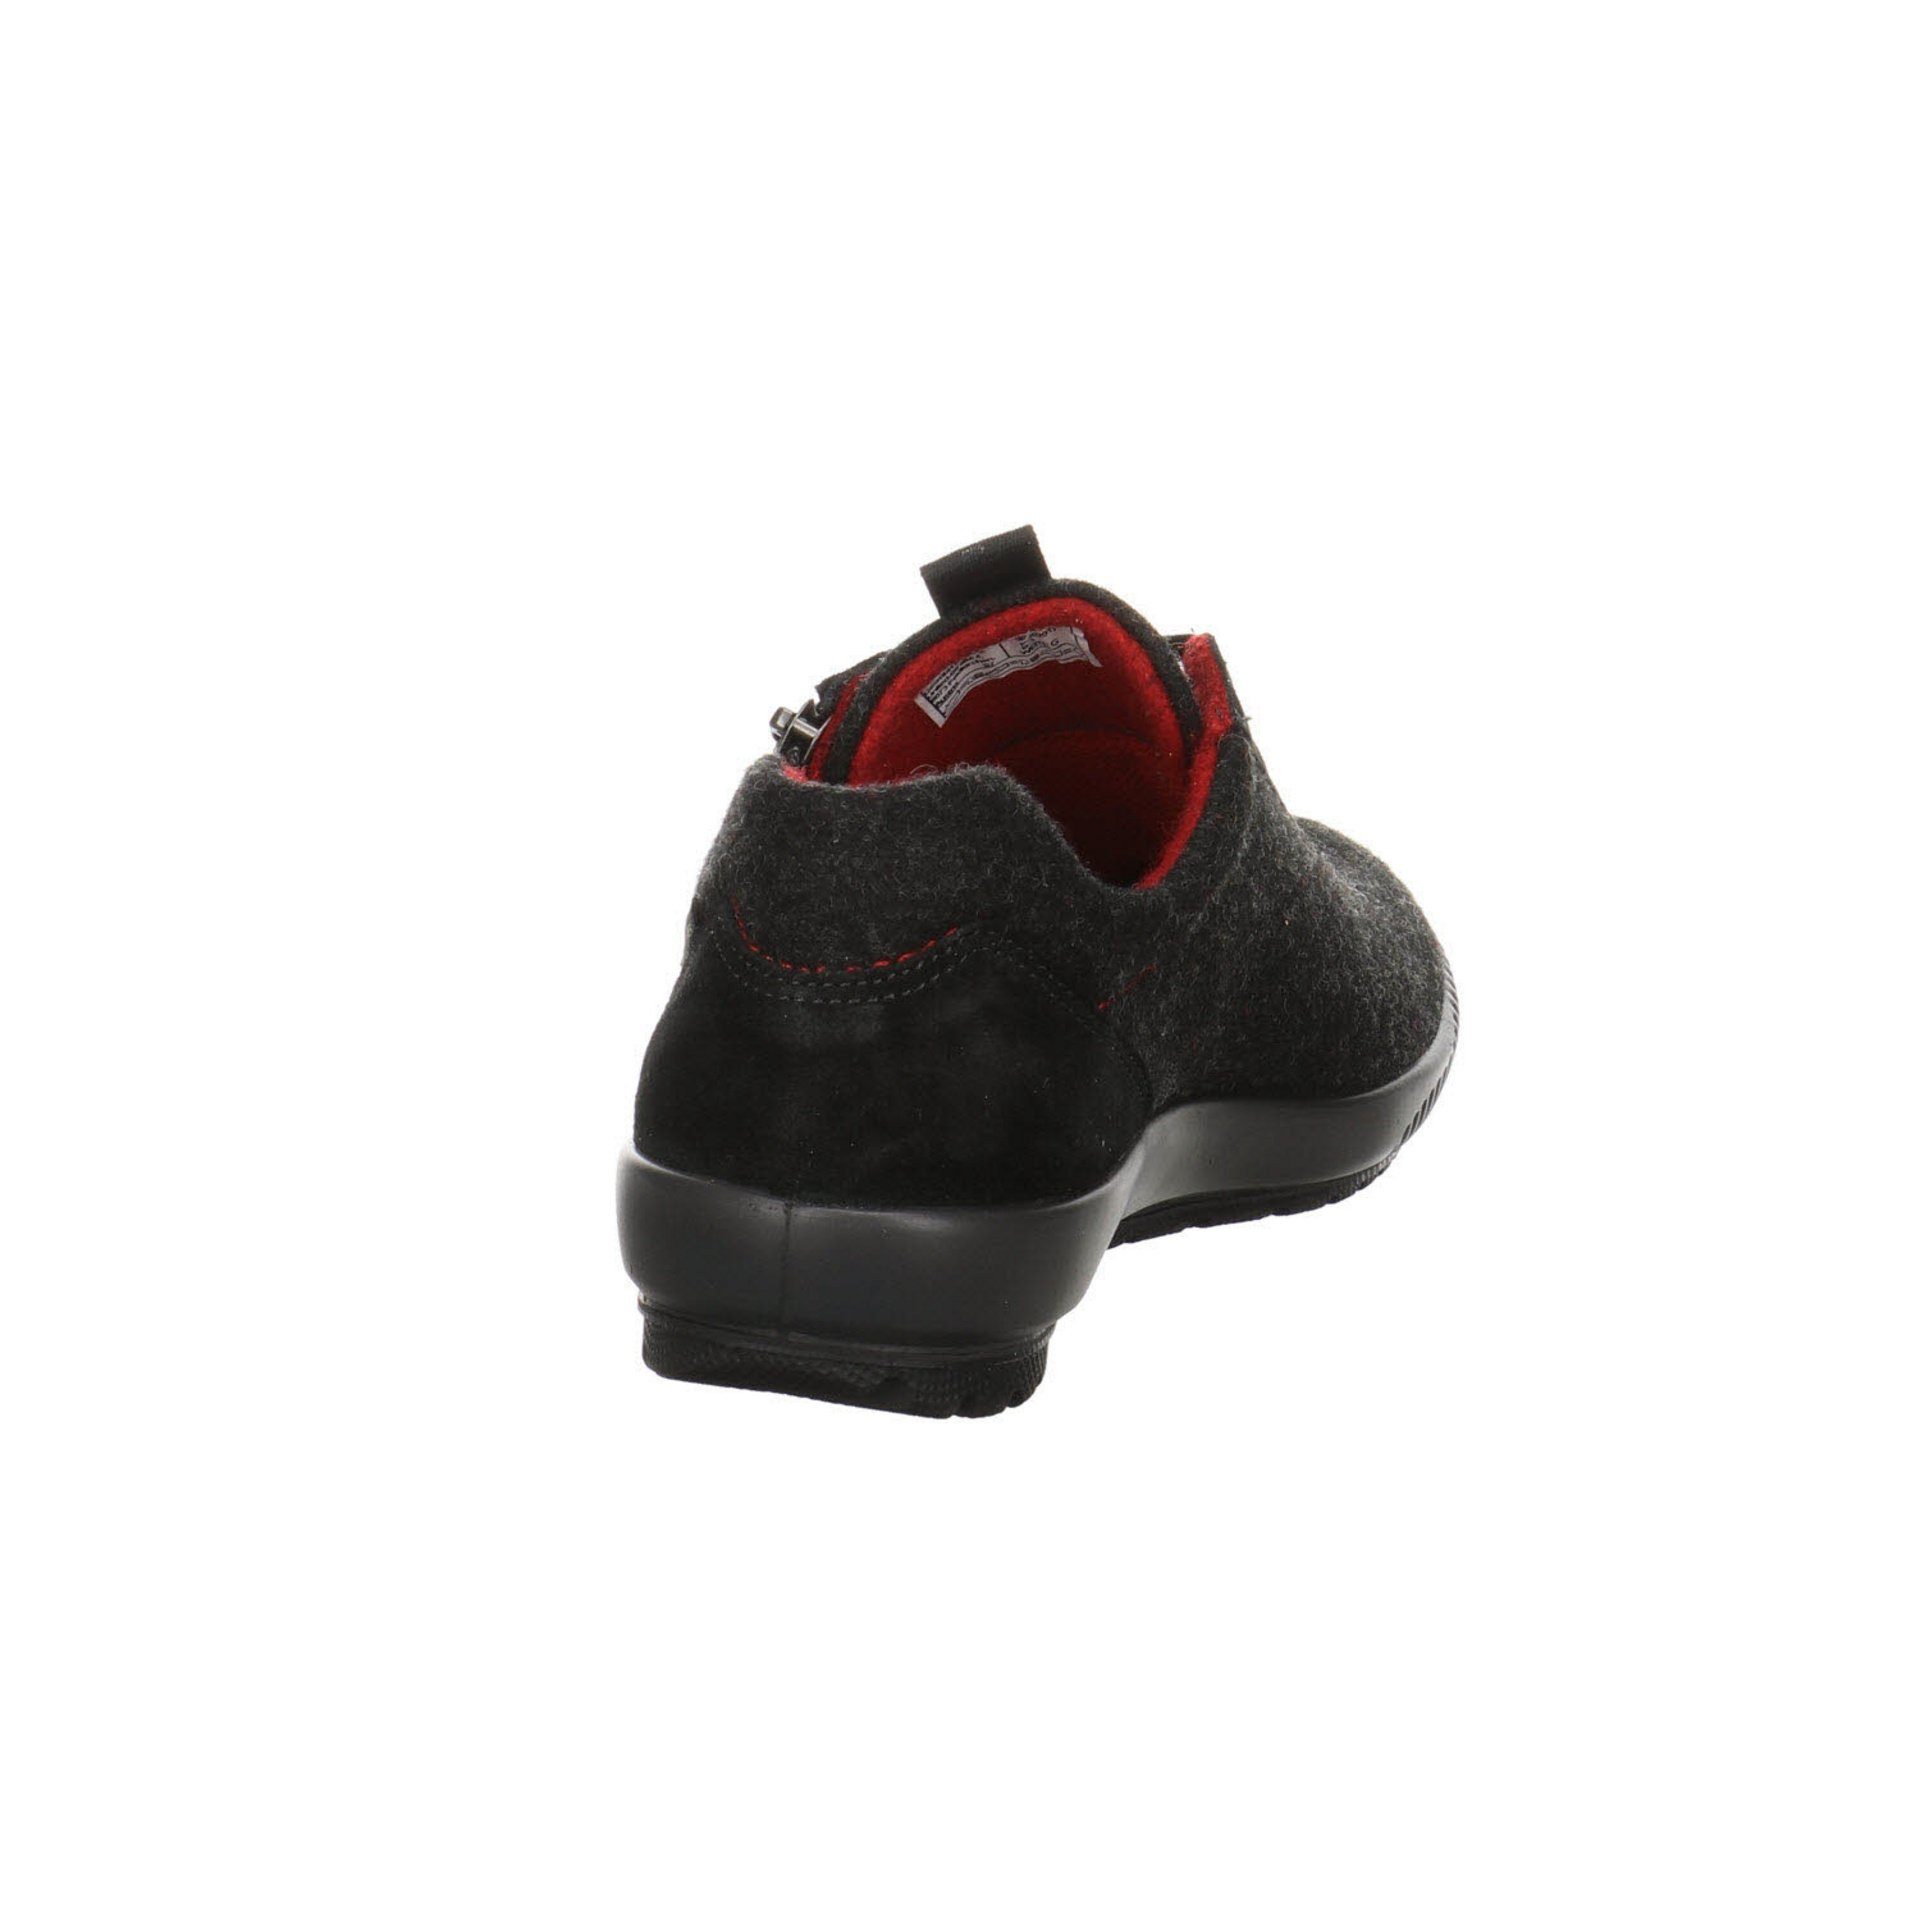 dunkel Legero schwarz Leder-/Textilkombination Schnürschuh 4.0 Goretex Sneaker Sneaker Damen Schuhe Tanaro